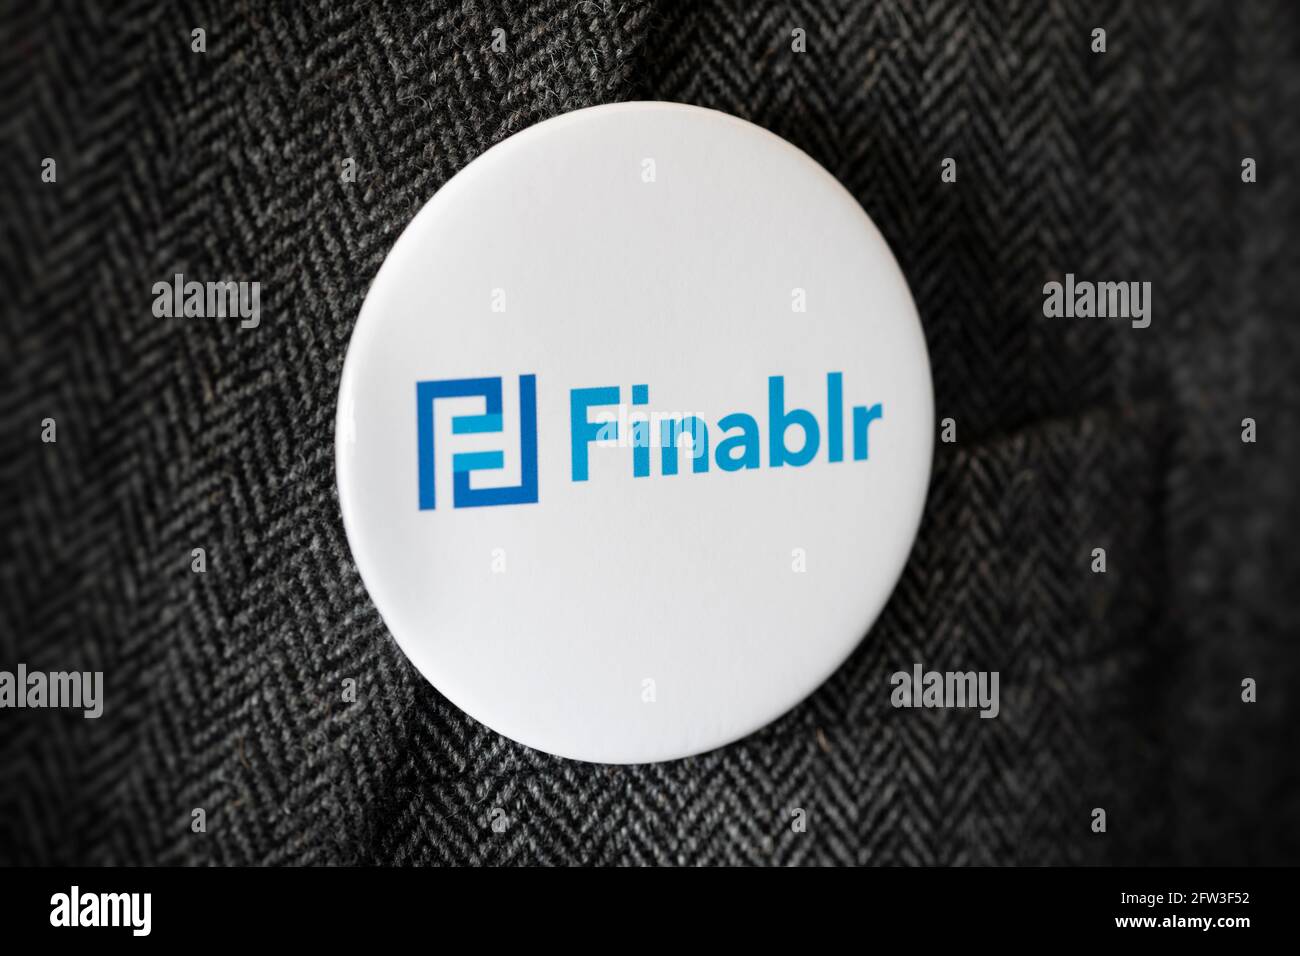 Ein Knopfabzeichen mit dem Logo der Finablr Financial Services Holding Company, das an einer Jacke befestigt ist. Stockfoto